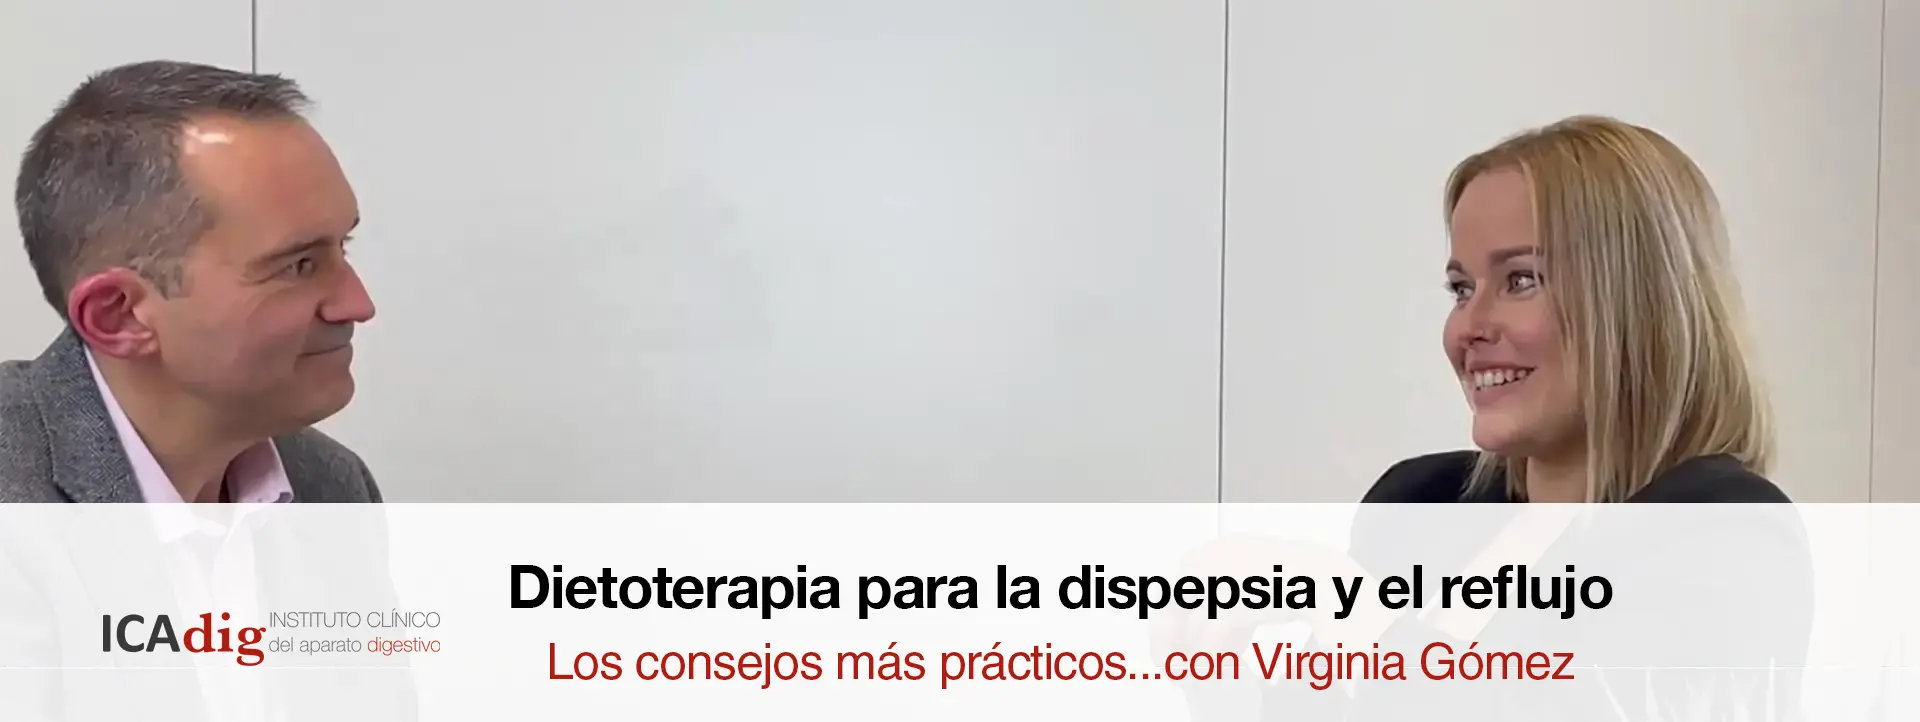 Dietoterapia para la dispepsia y el reflujo con Virginia Gómez icadig